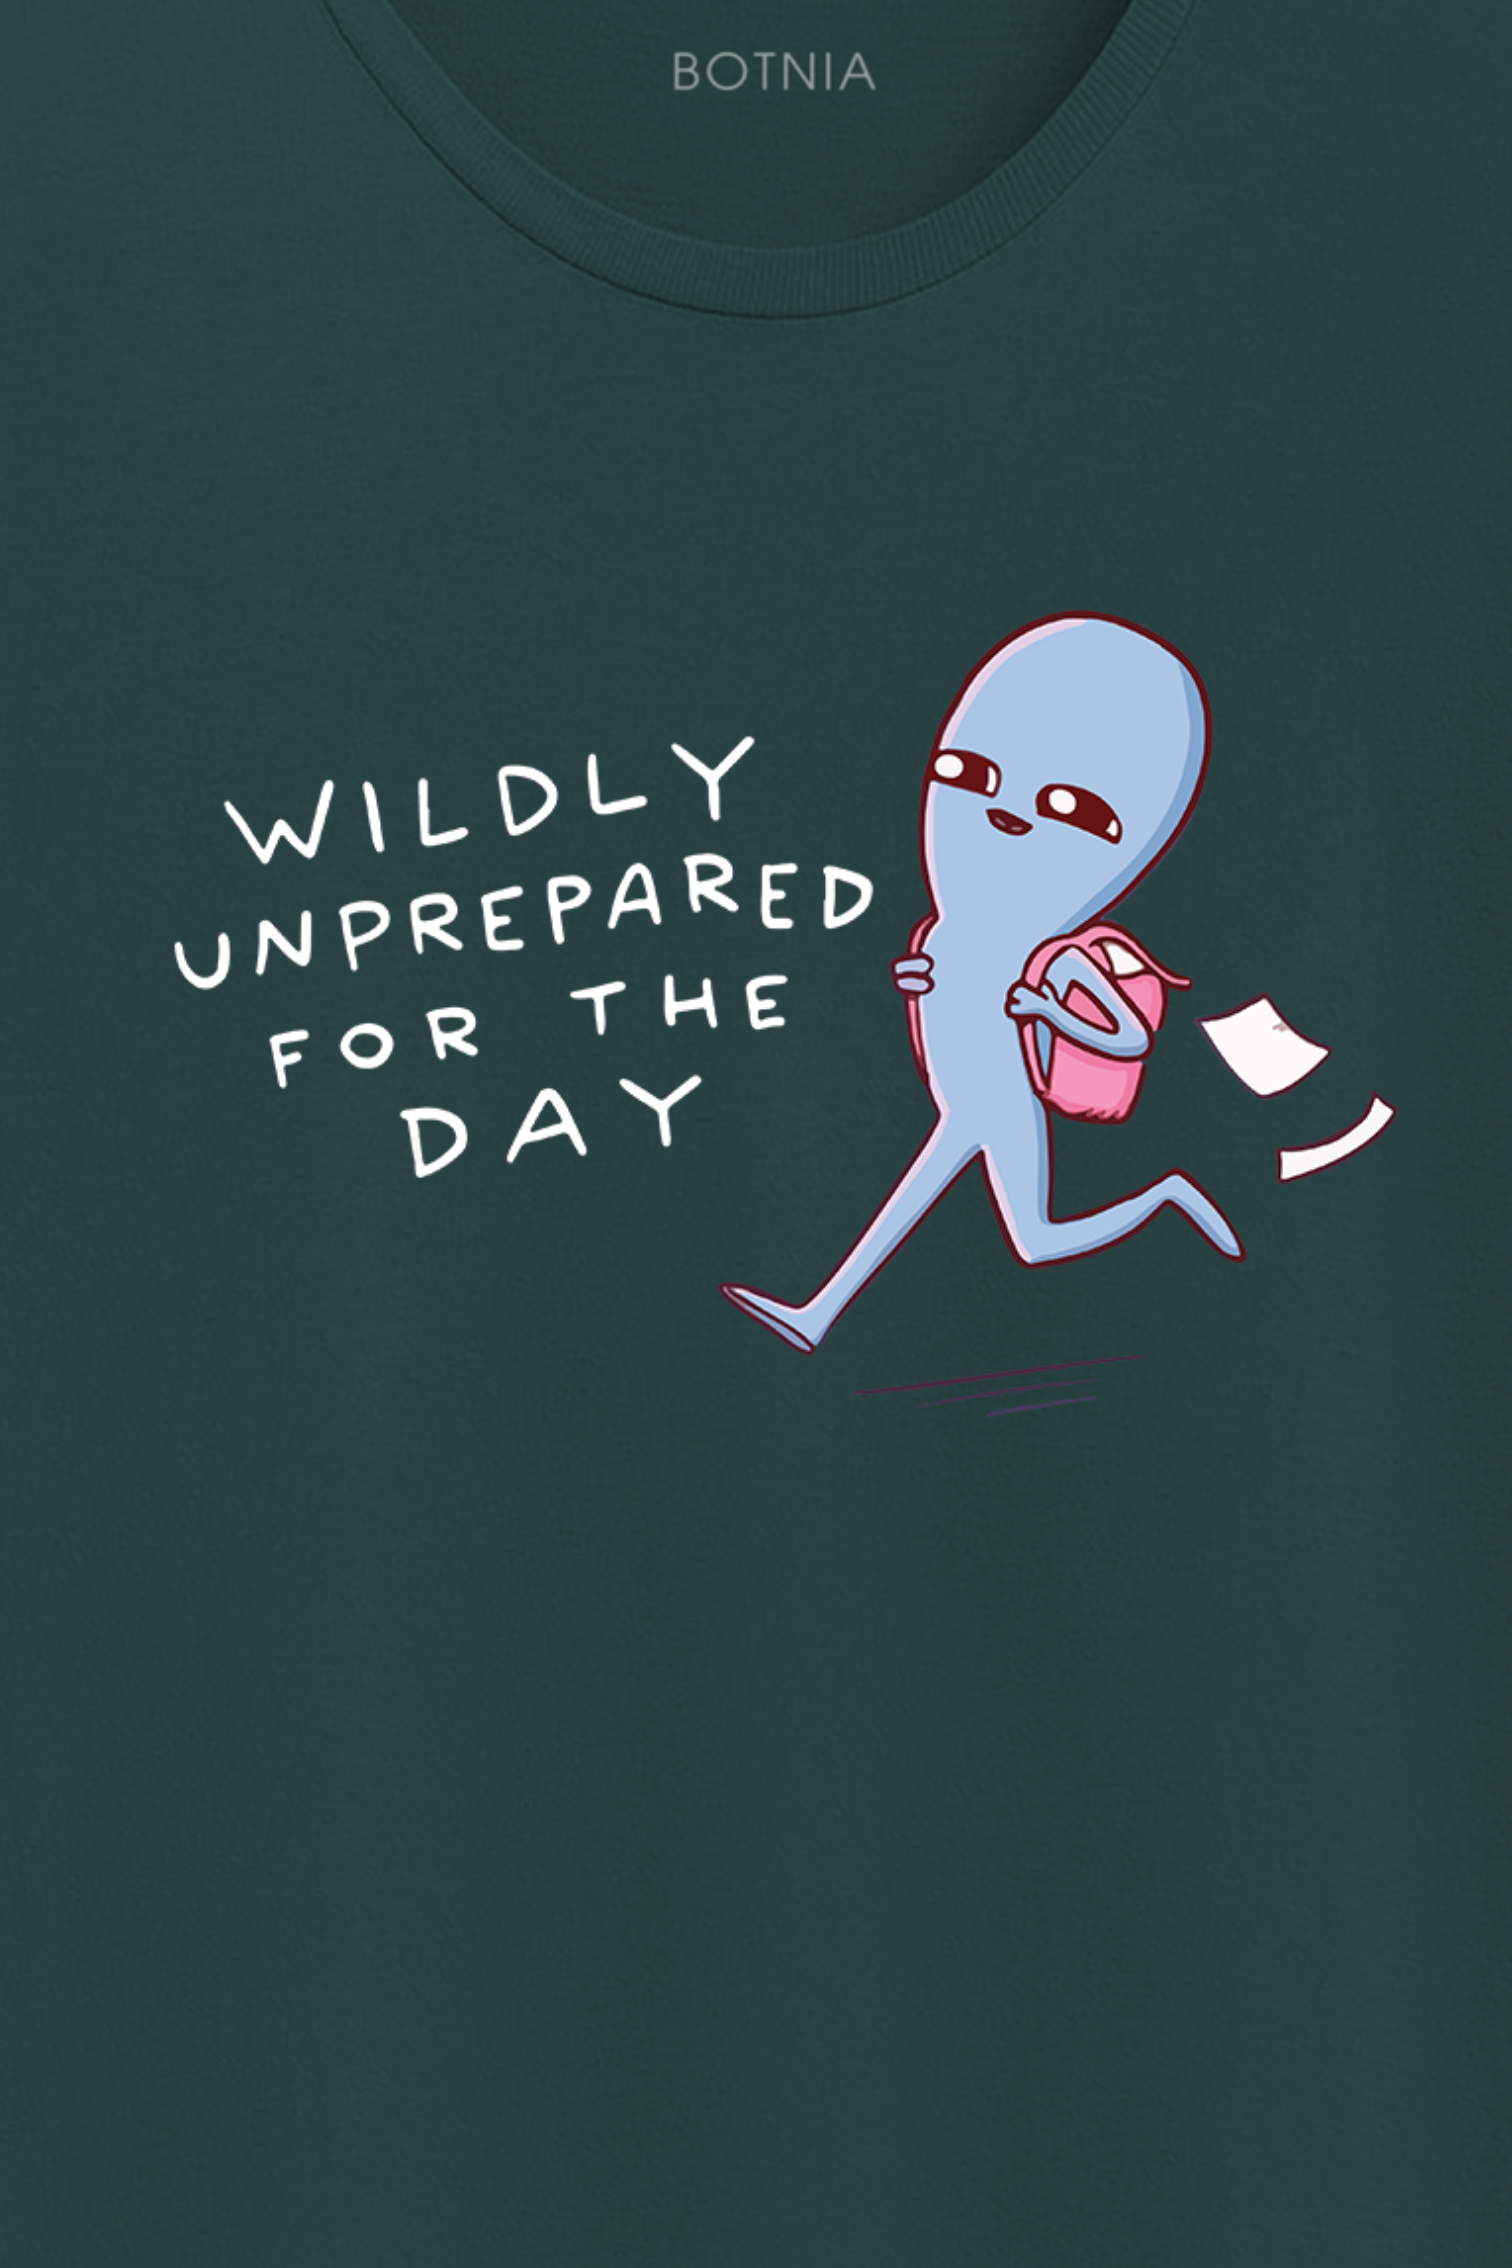 Wildly Unprepared- Half sleeve t-shirt